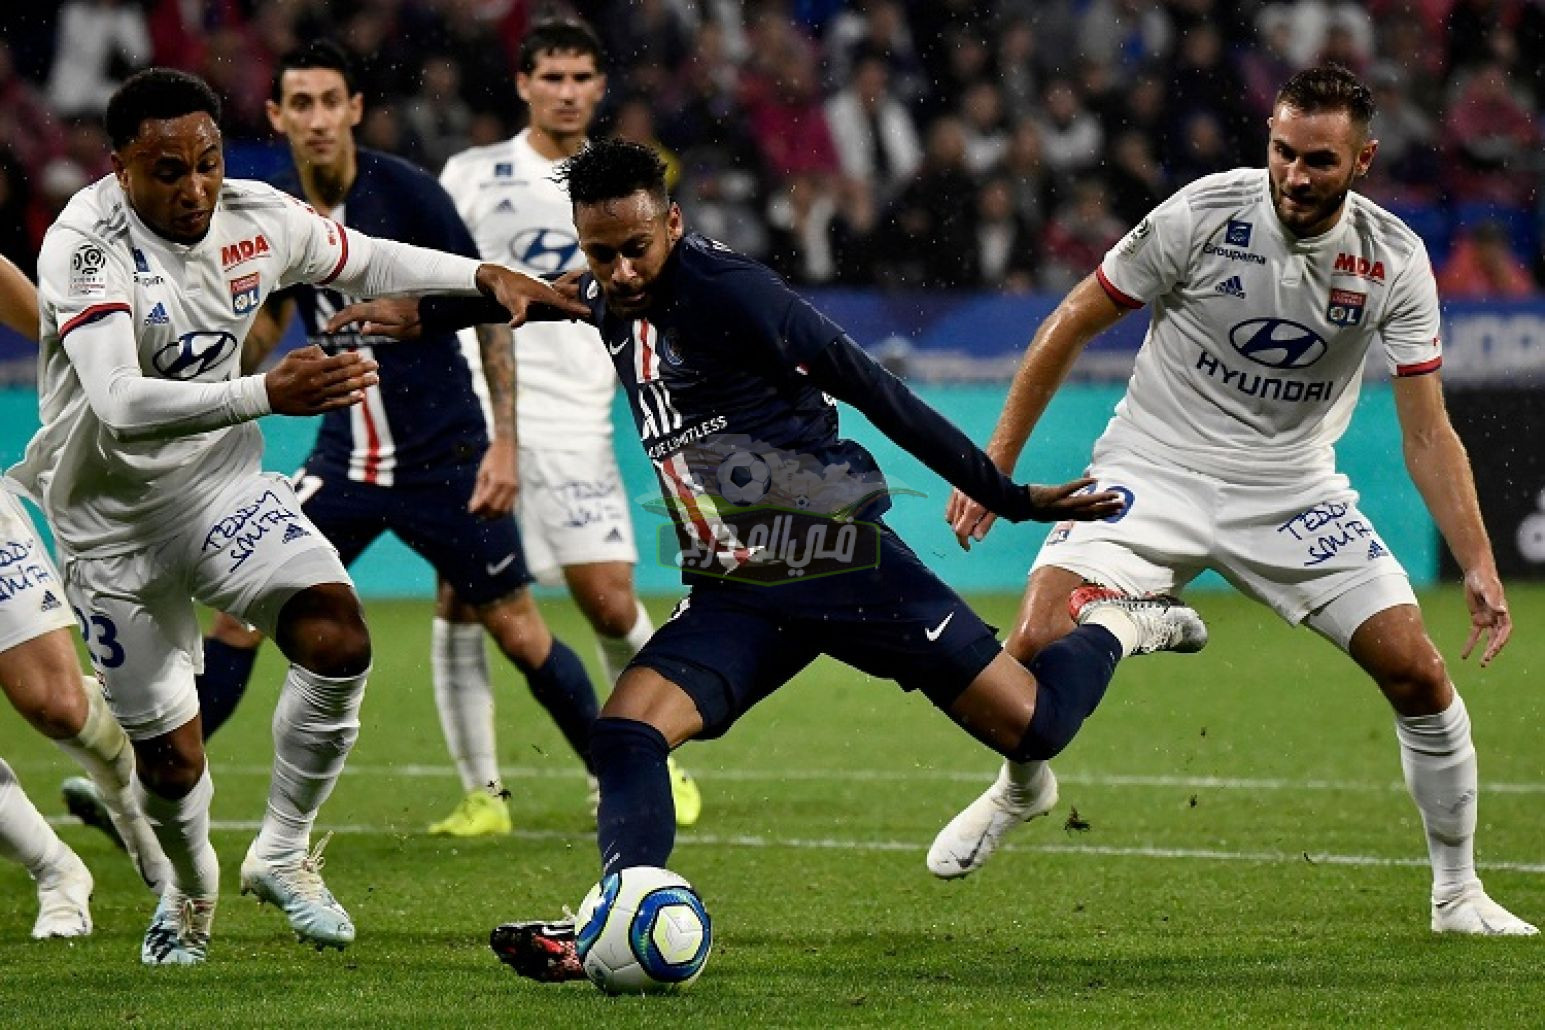 القنوات المفتوحة الناقلة لمباراة باريس سان جيرمان وليون PSG Vs Lyonn في الدوري الفرنسي